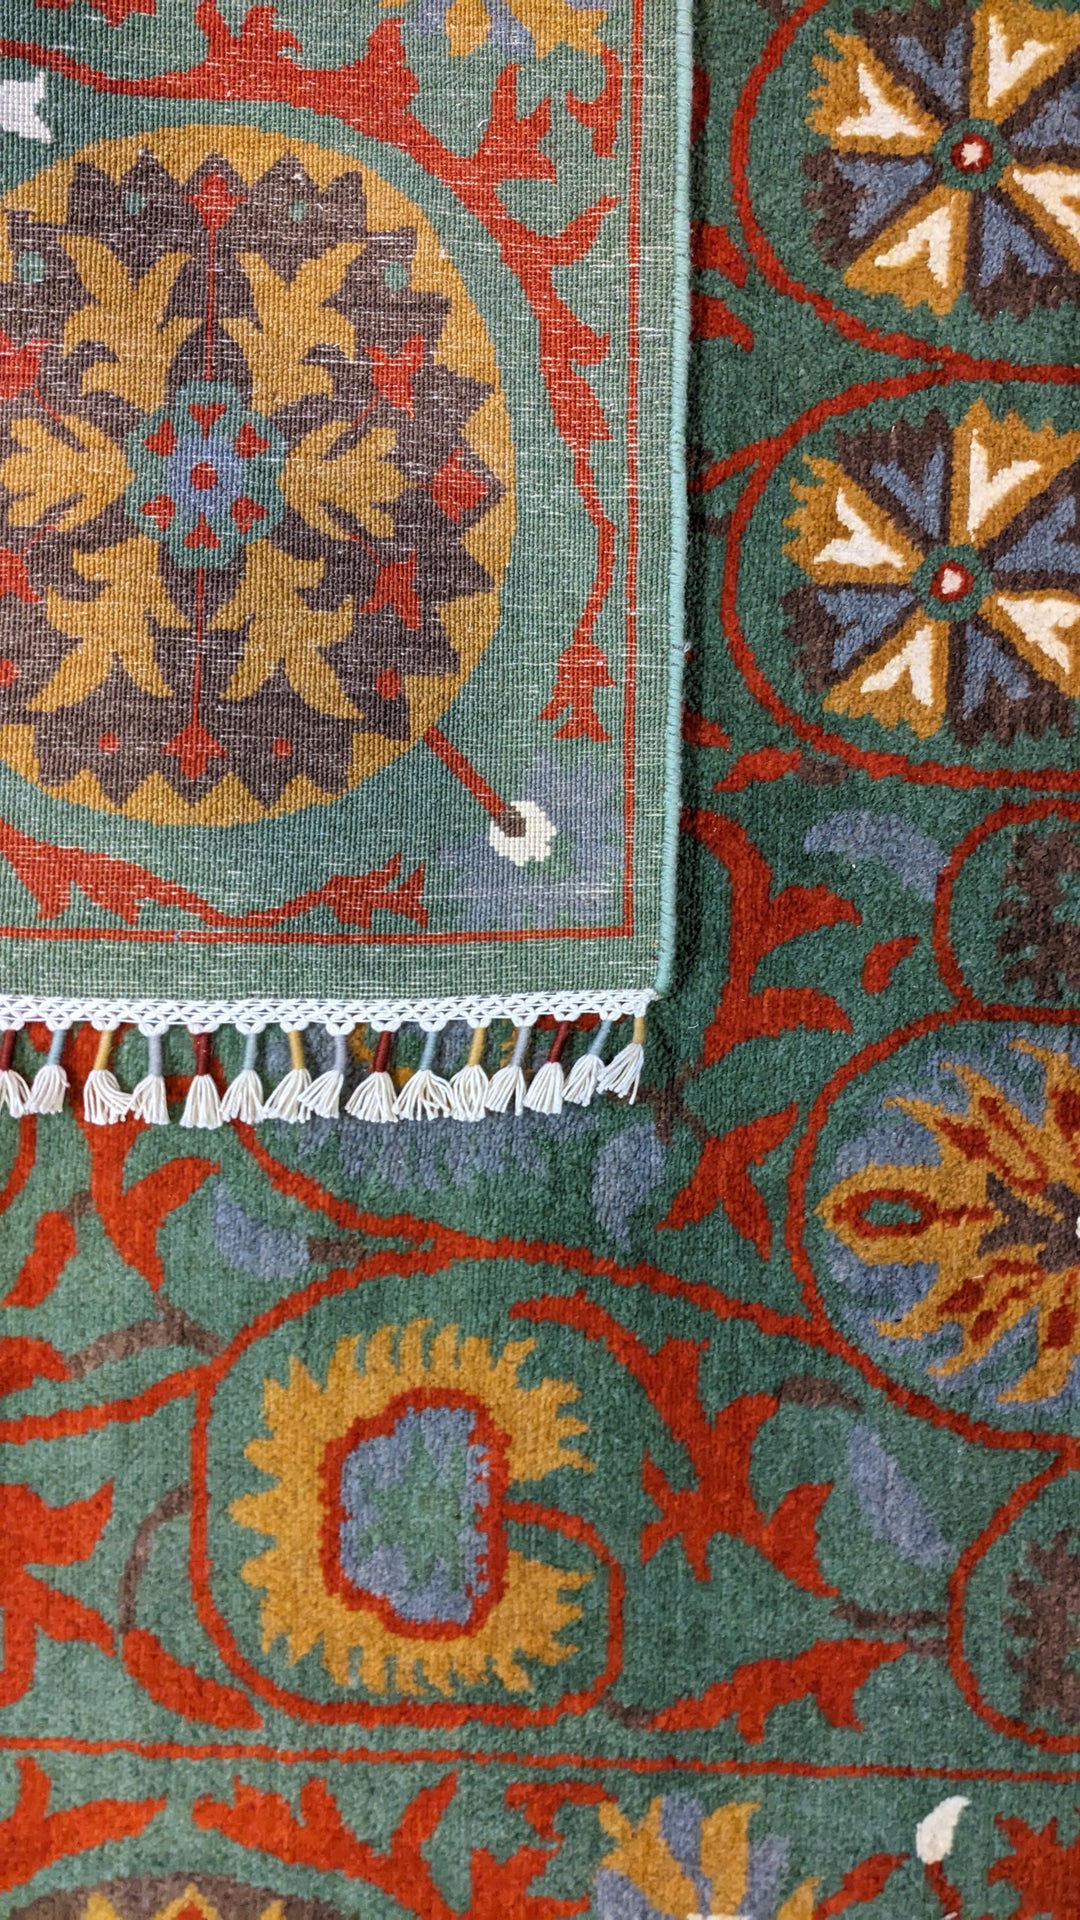 Sabz - Size: 9.1 x 5.11 - Imam Carpet Co